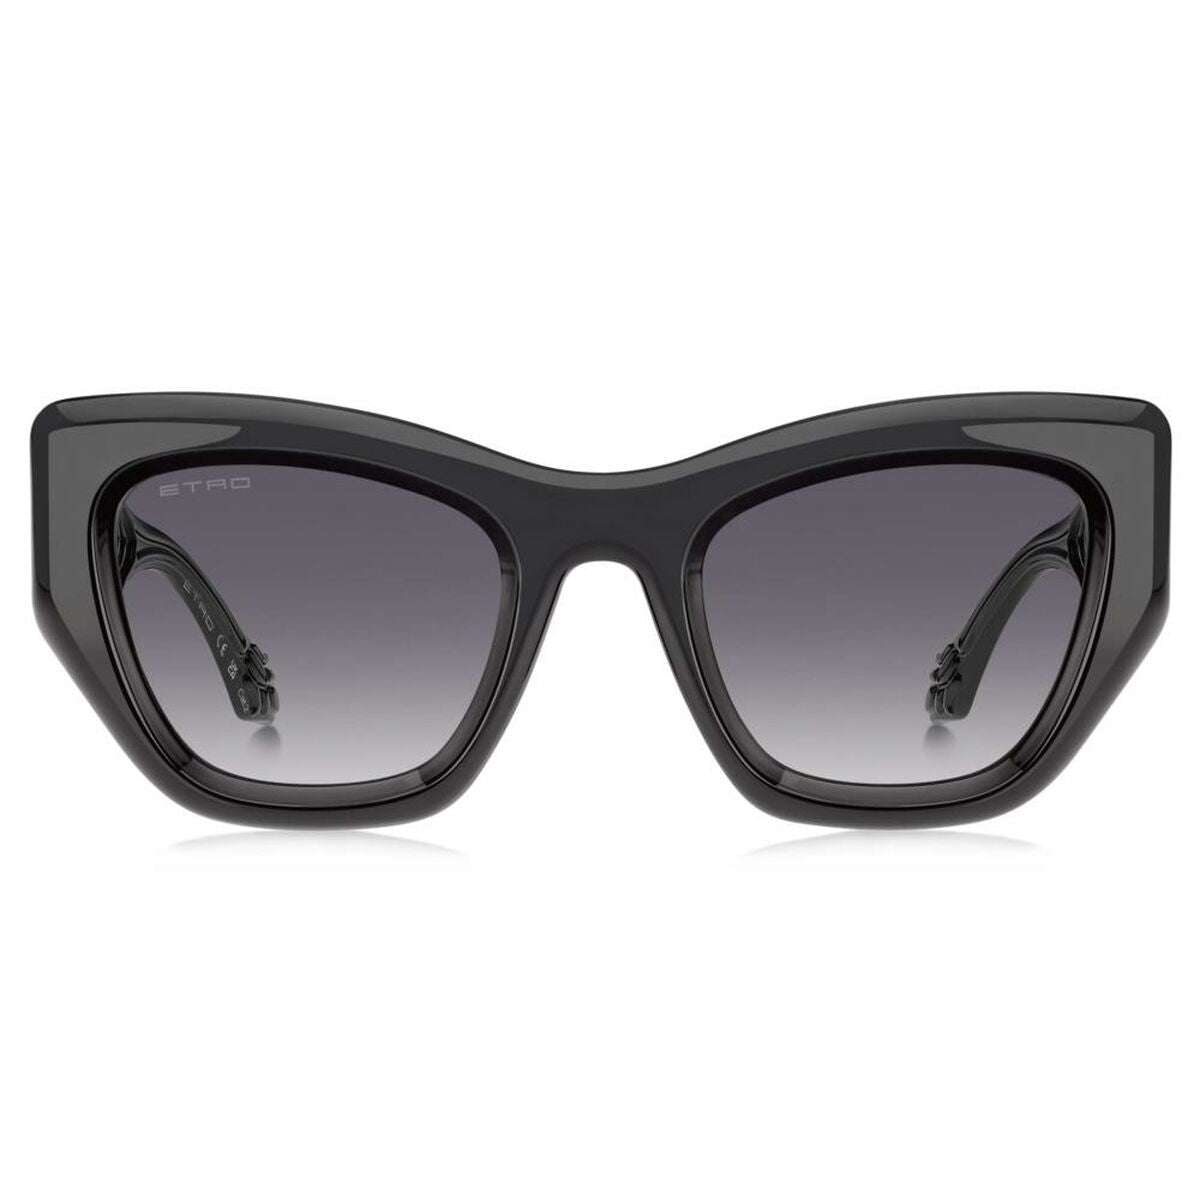 Kaufe Damensonnenbrille Etro ETRO 0017_S bei AWK Flagship um € 252.00